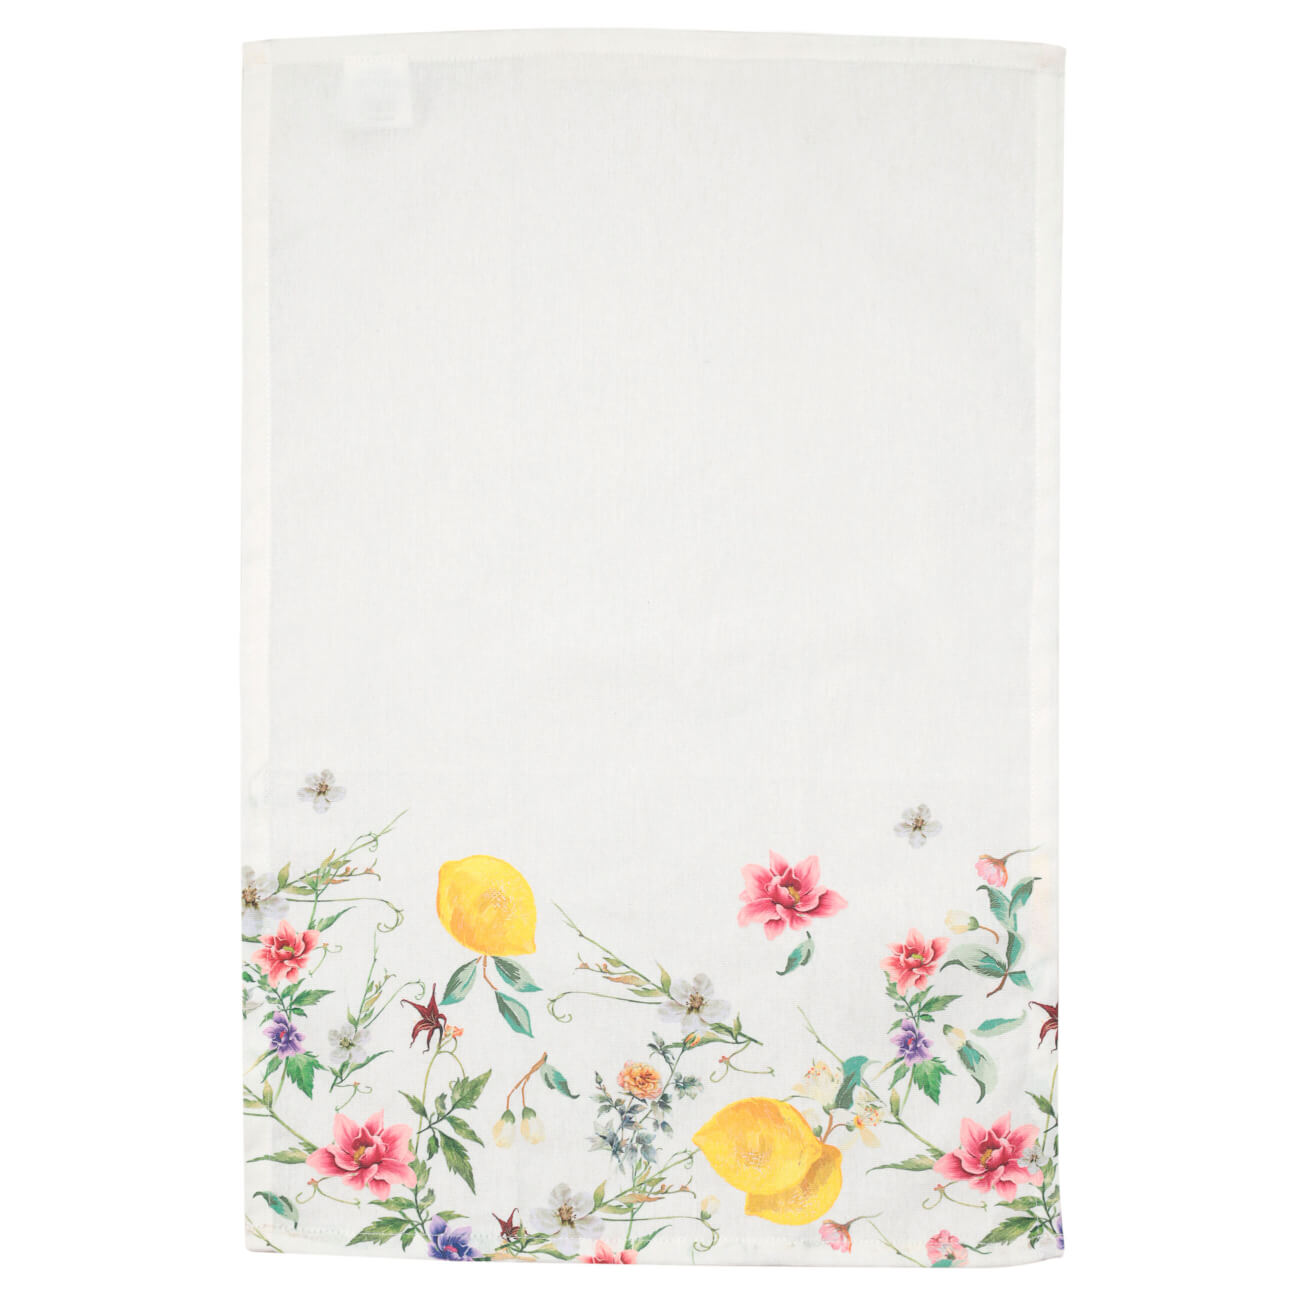 Полотенце кухонное, 40x60 см, хлопок, белое, Цветы и лимоны, Sicily in bloom полотенце xiaomi zsh youth series 34cm x 76cm белое